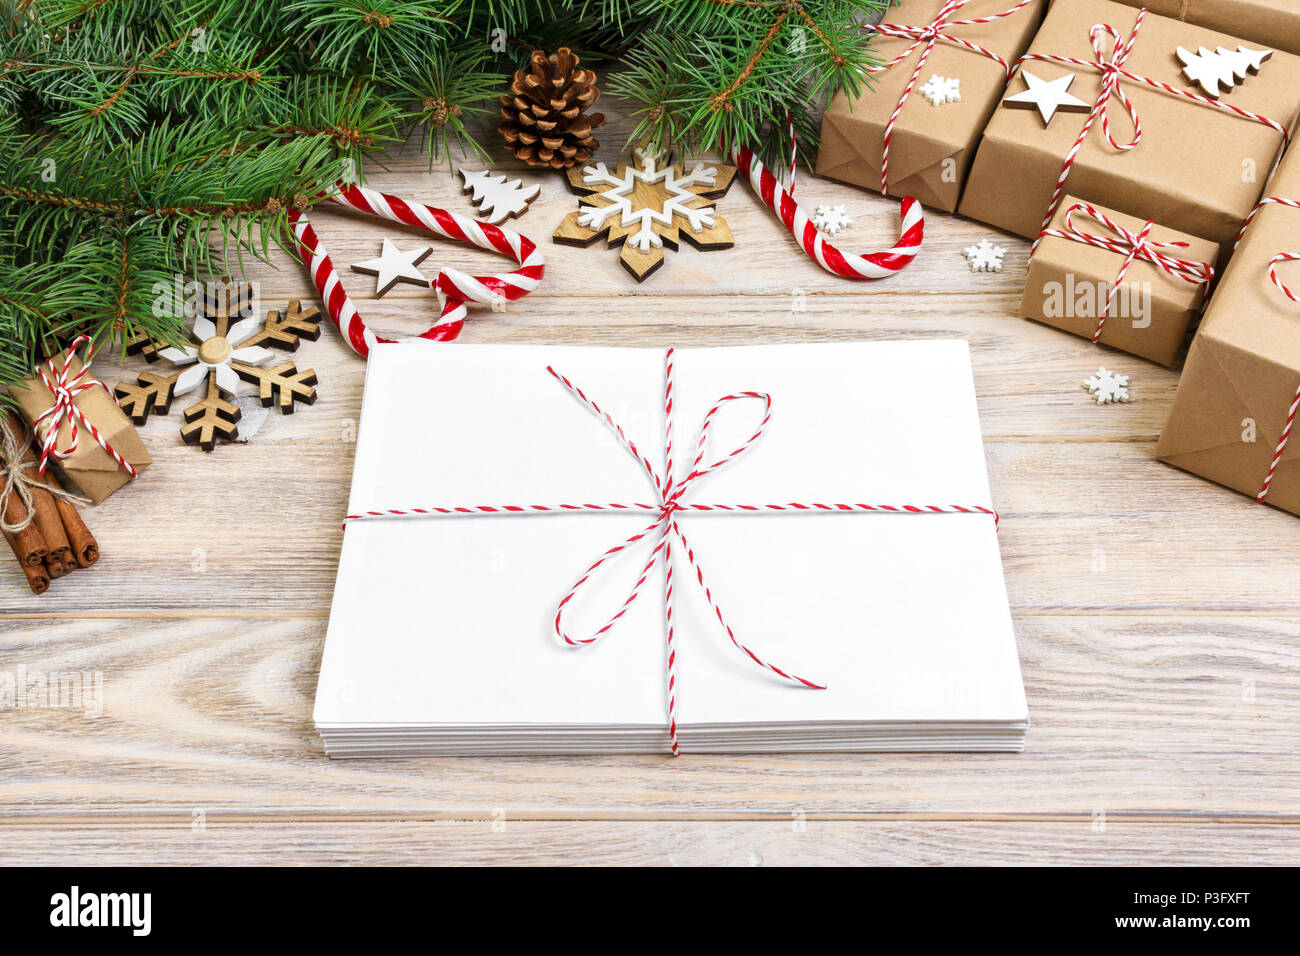 Umschlag mit leeren Blatt Papier auf Weihnachten Hintergrund-fir Zweig, Tannenzapfen, red ribbon, Sterne und Herzen von Süßigkeiten. Platz für Ihren Text. Stockfoto